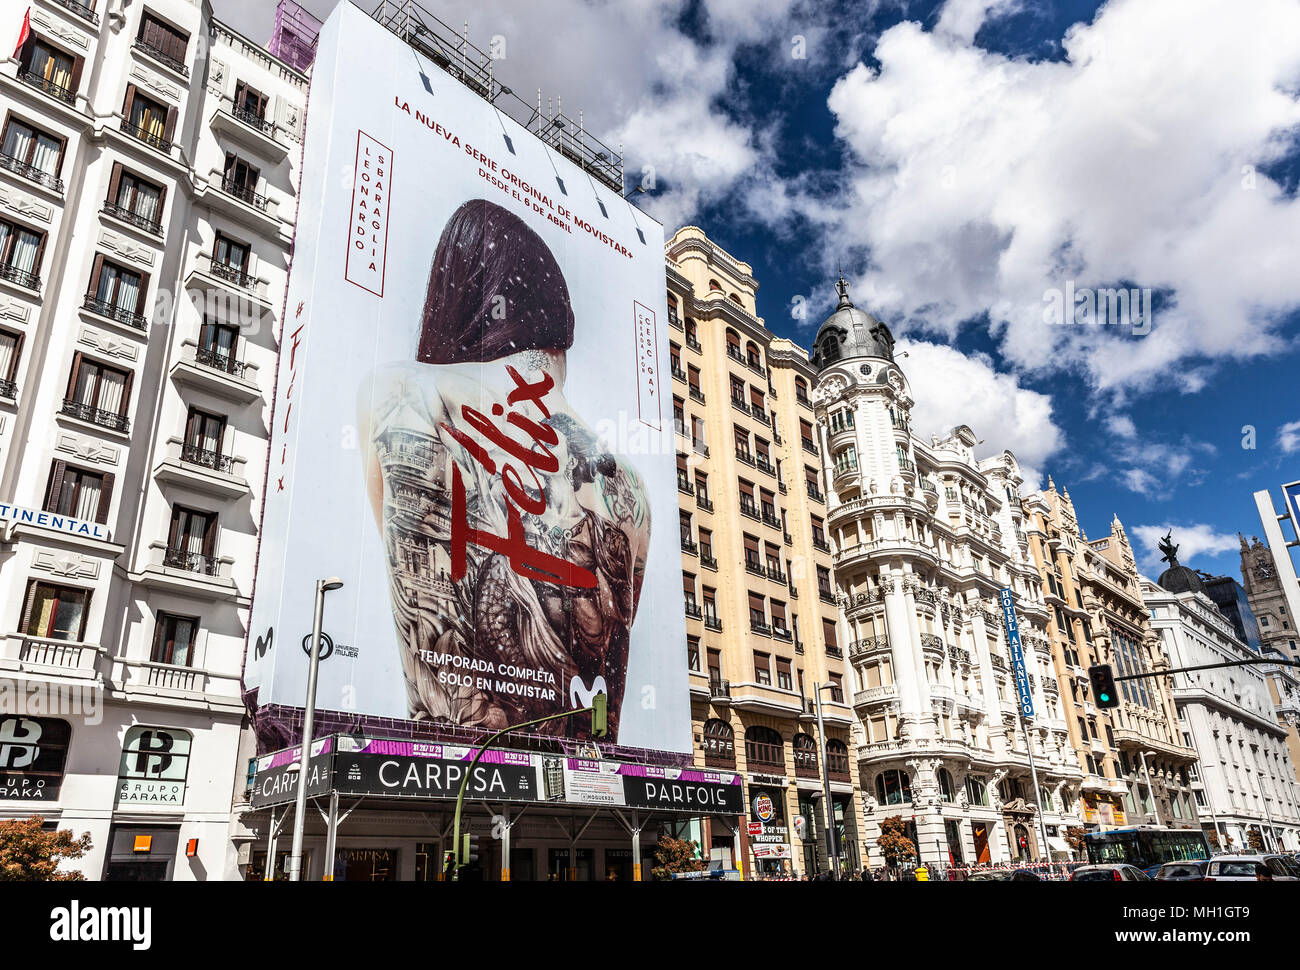 Panneau d'affichage géant couvrant l'échafaudage sur le devant d'un bâtiment, Gran via, Madrid, Espagne. Banque D'Images